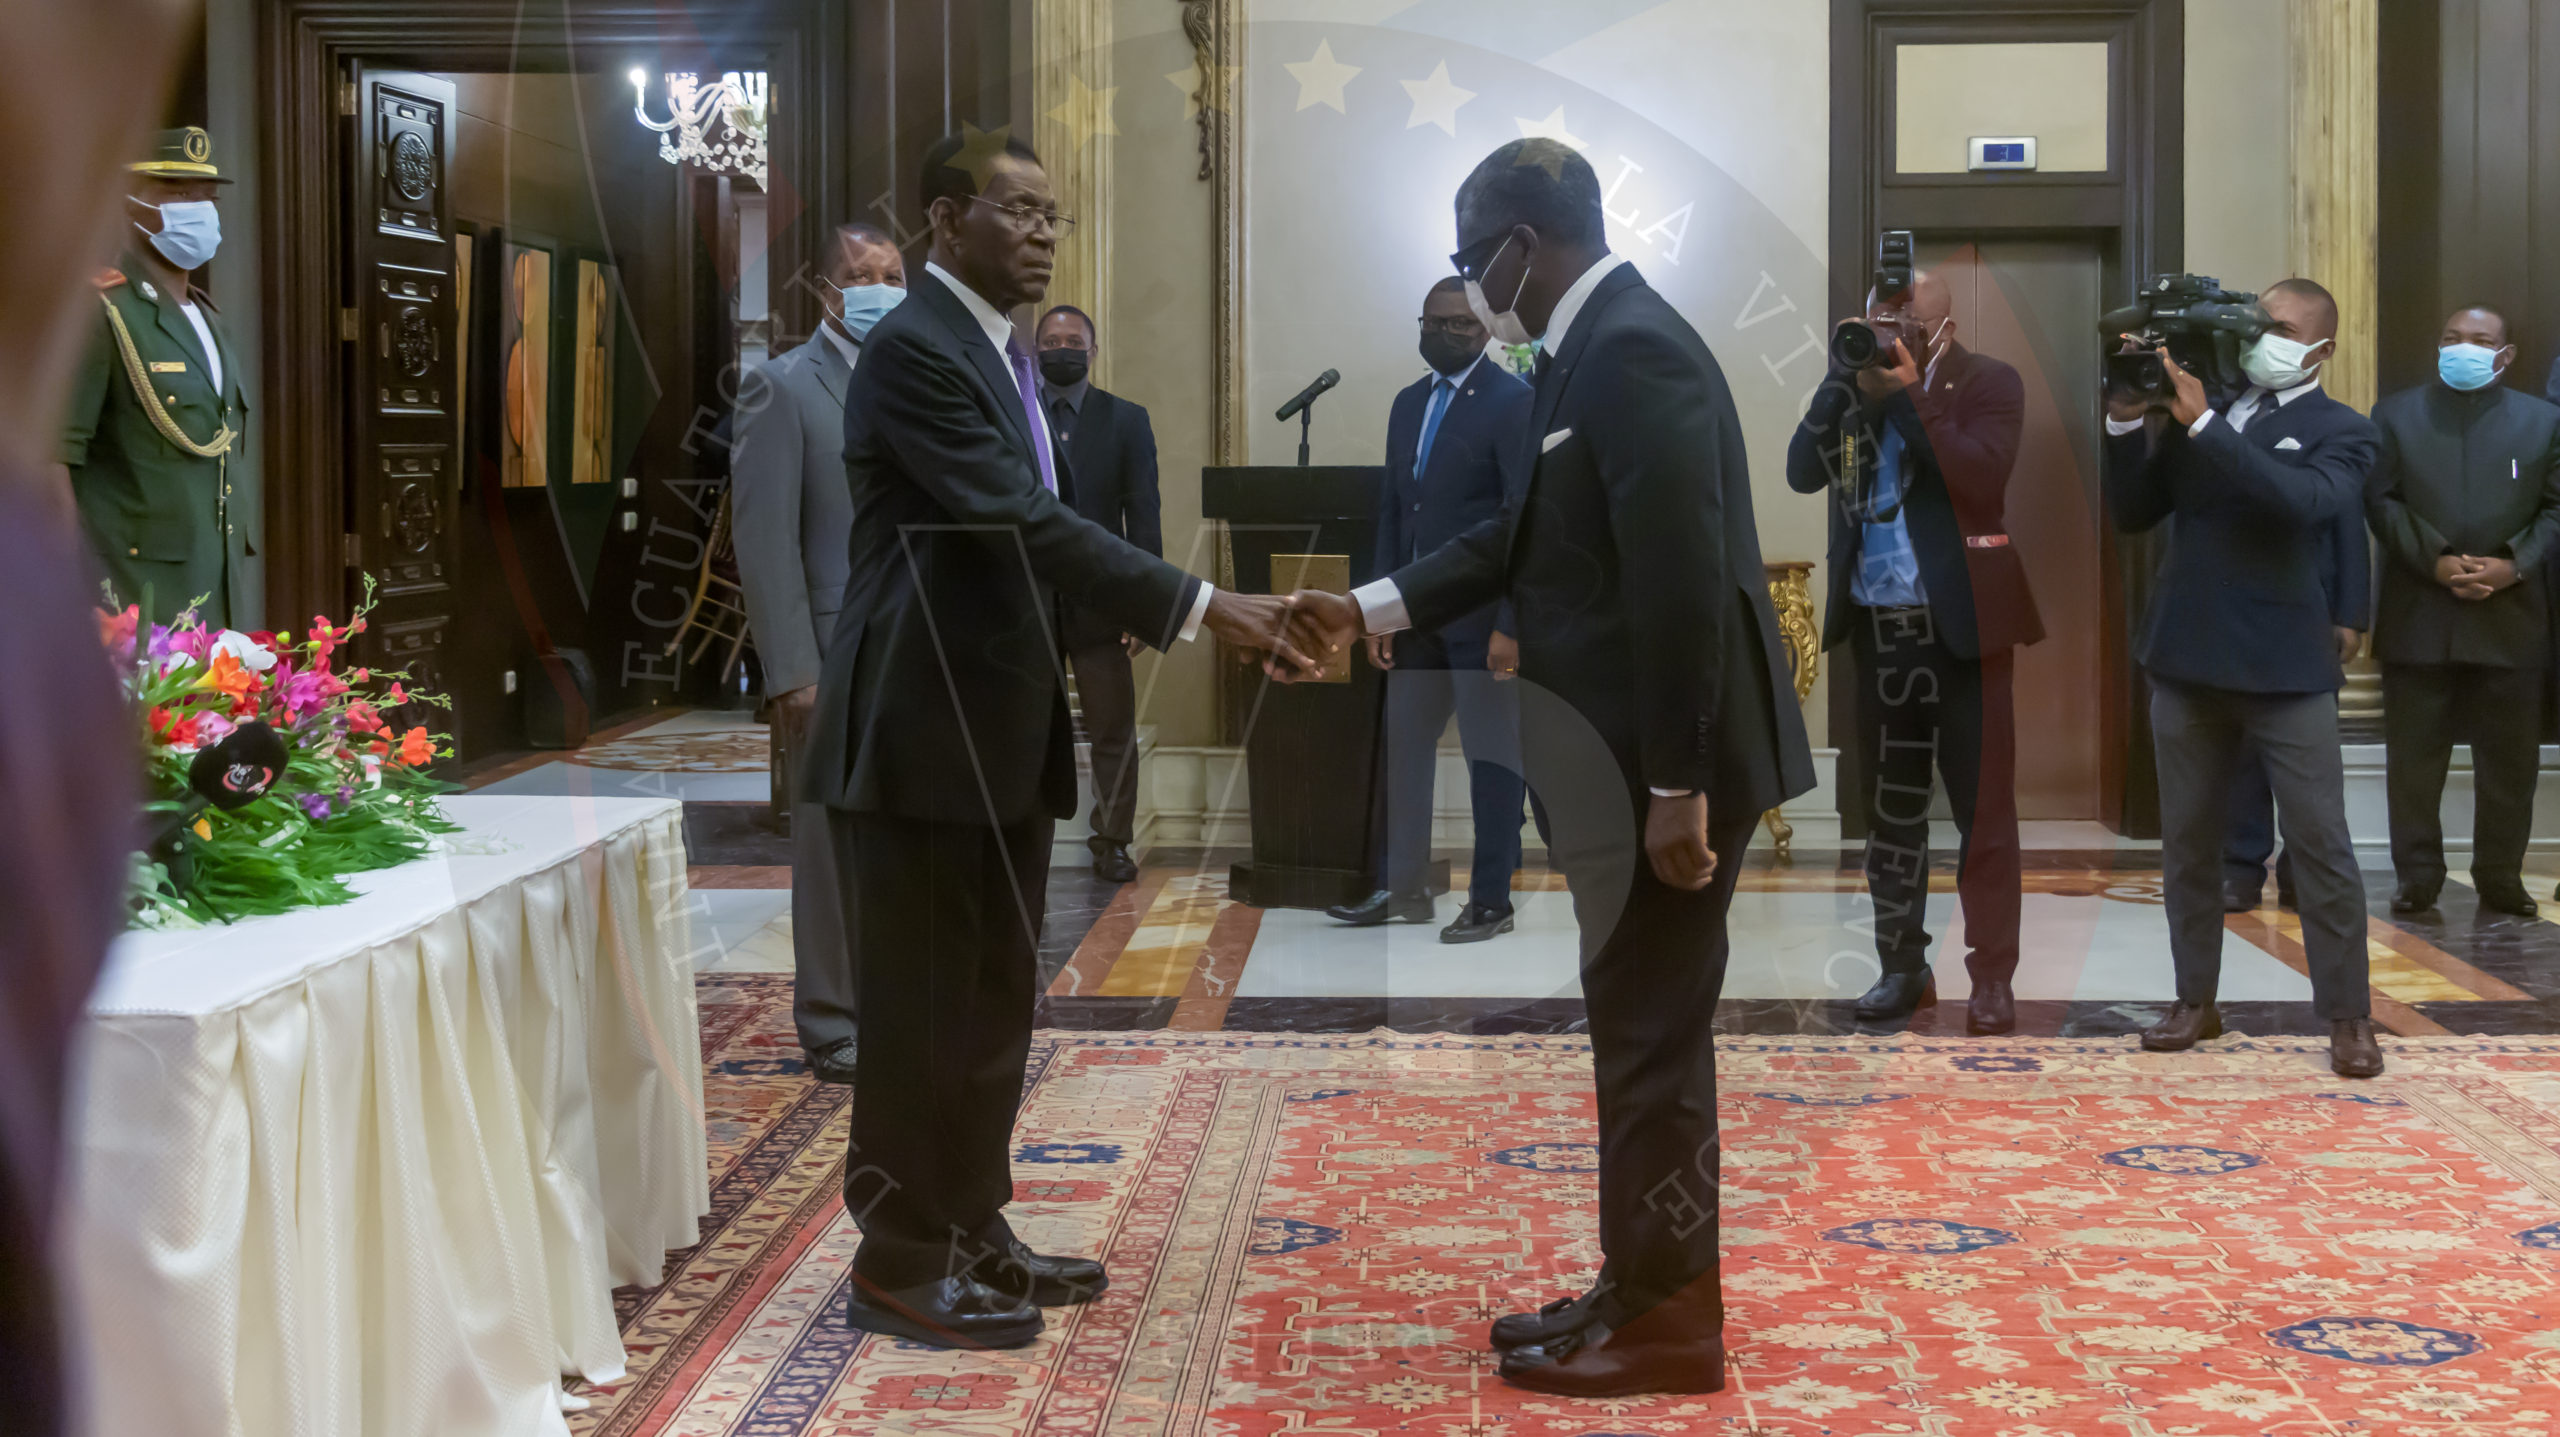 El vicepresidente de la República estrechando la mano al Jefe de Estado